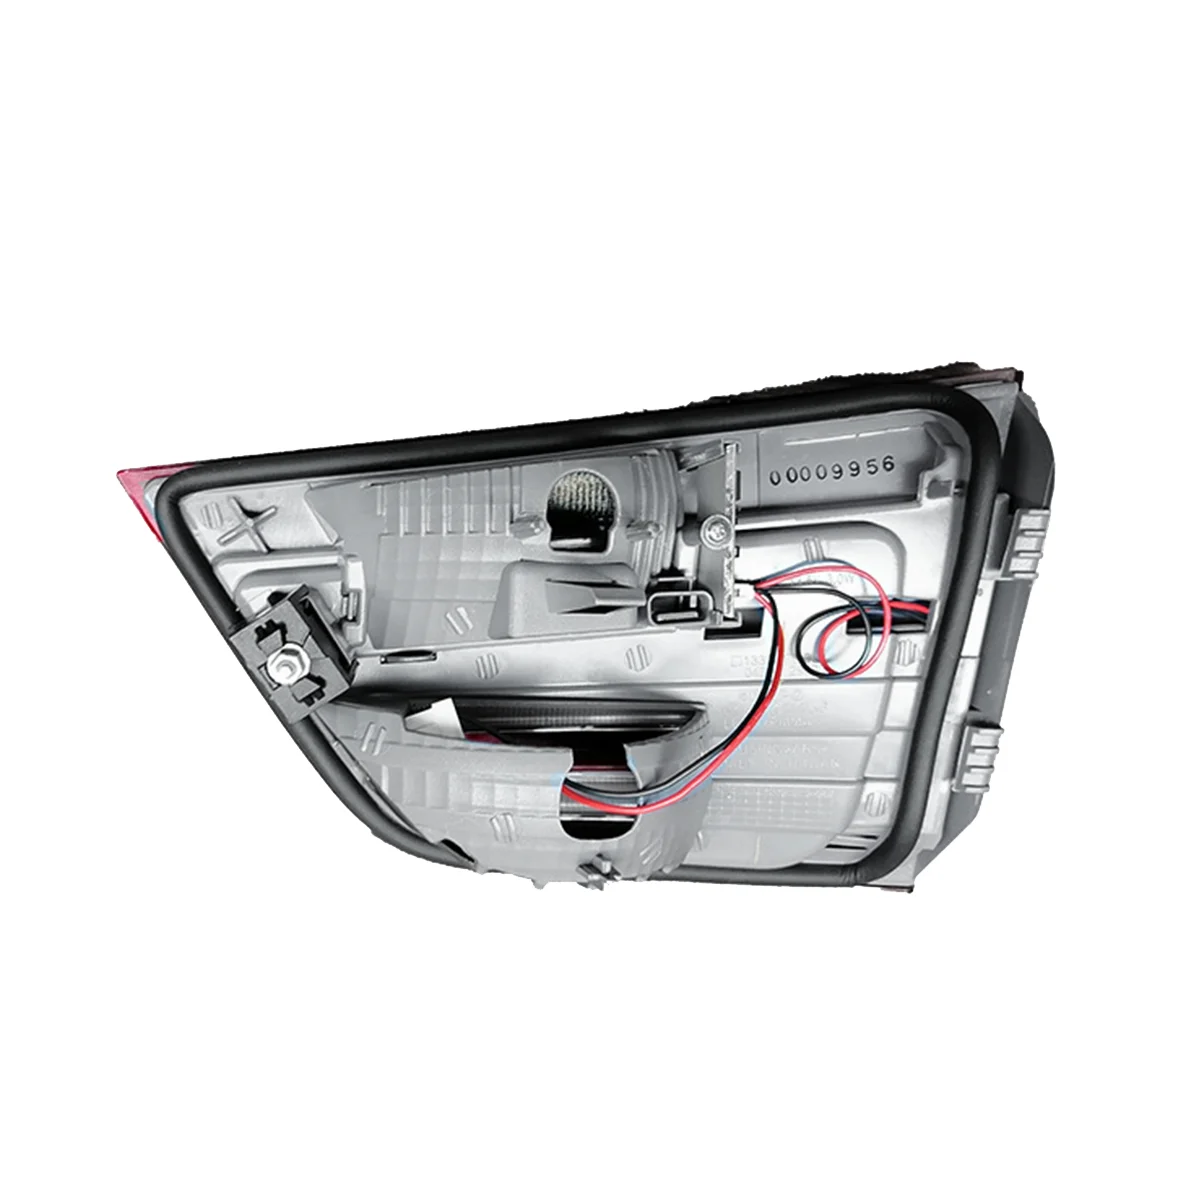 

63217217314 Right Rear LED Lamp Trim Bezel Shell Reversing Signal Brake Light for X3 F25 2009-2017 Tail Light Cover